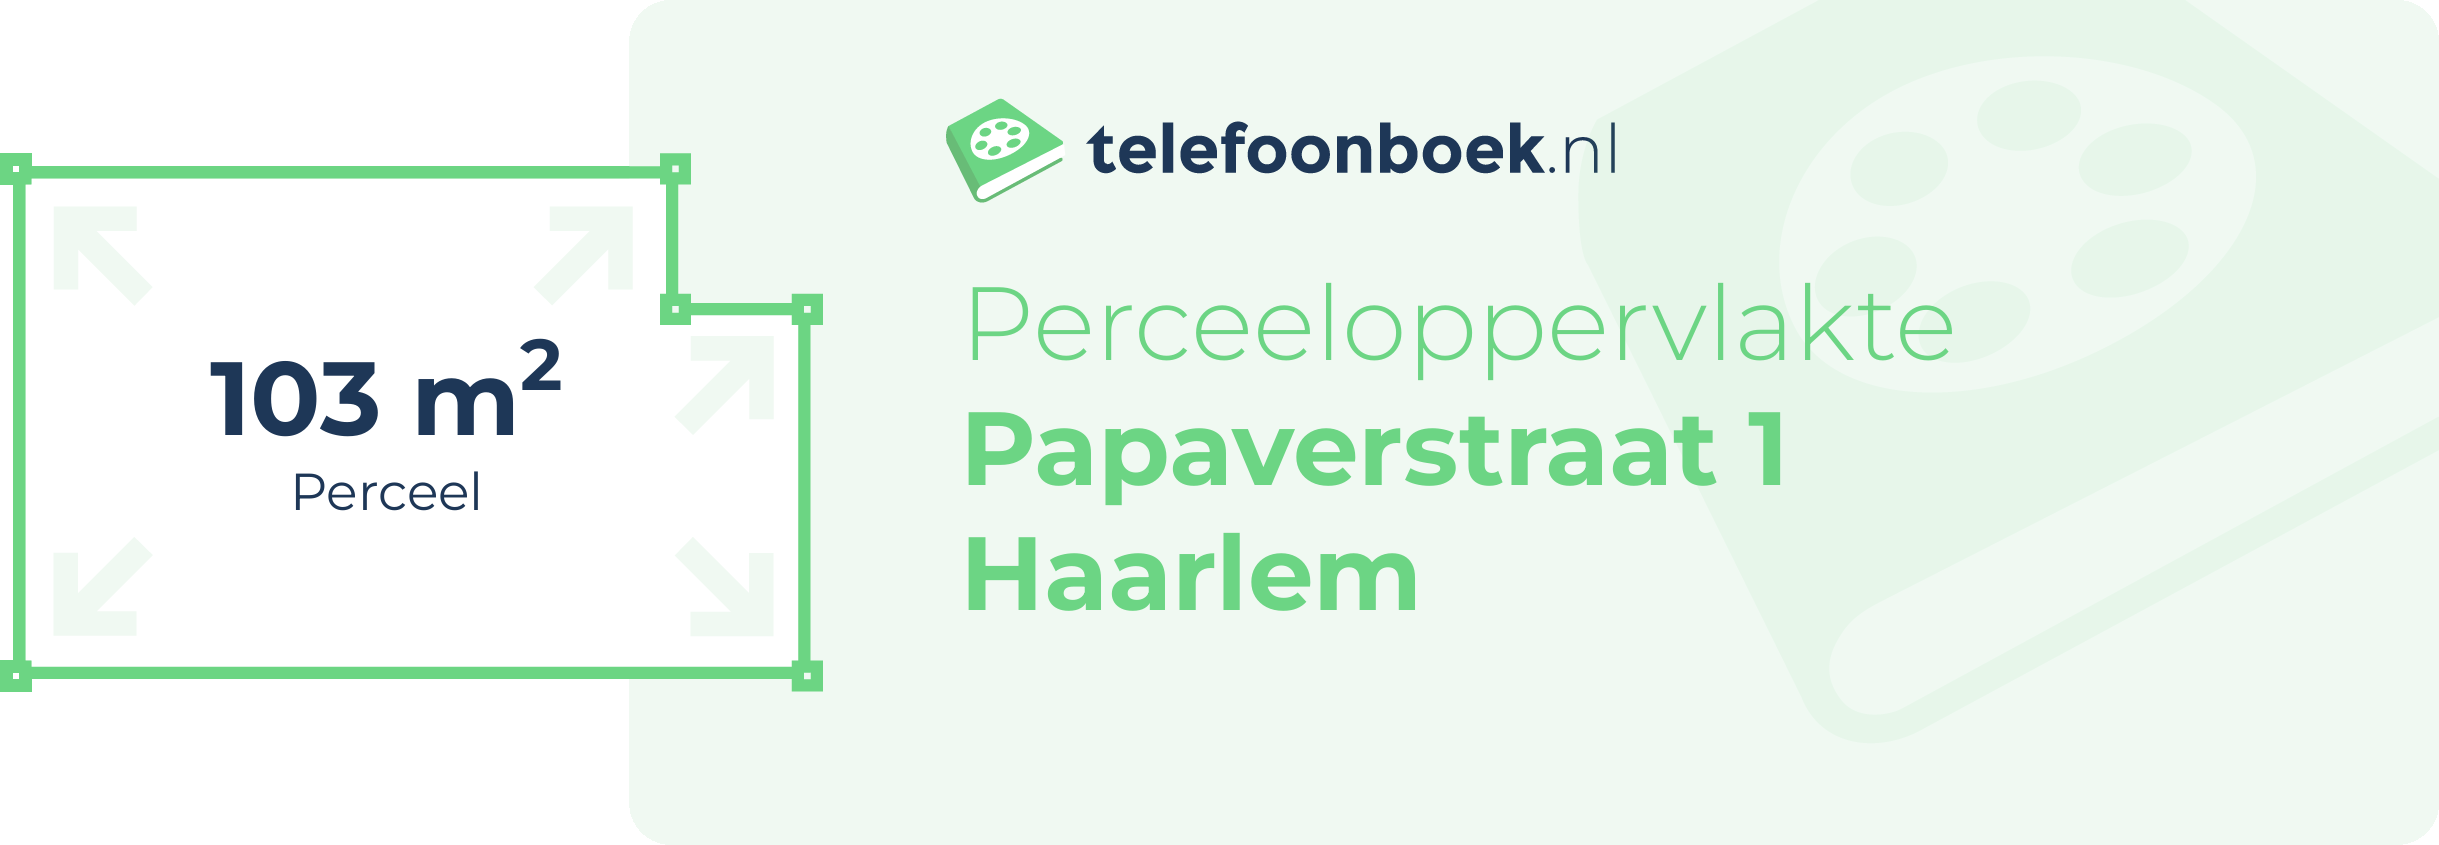 Perceeloppervlakte Papaverstraat 1 Haarlem